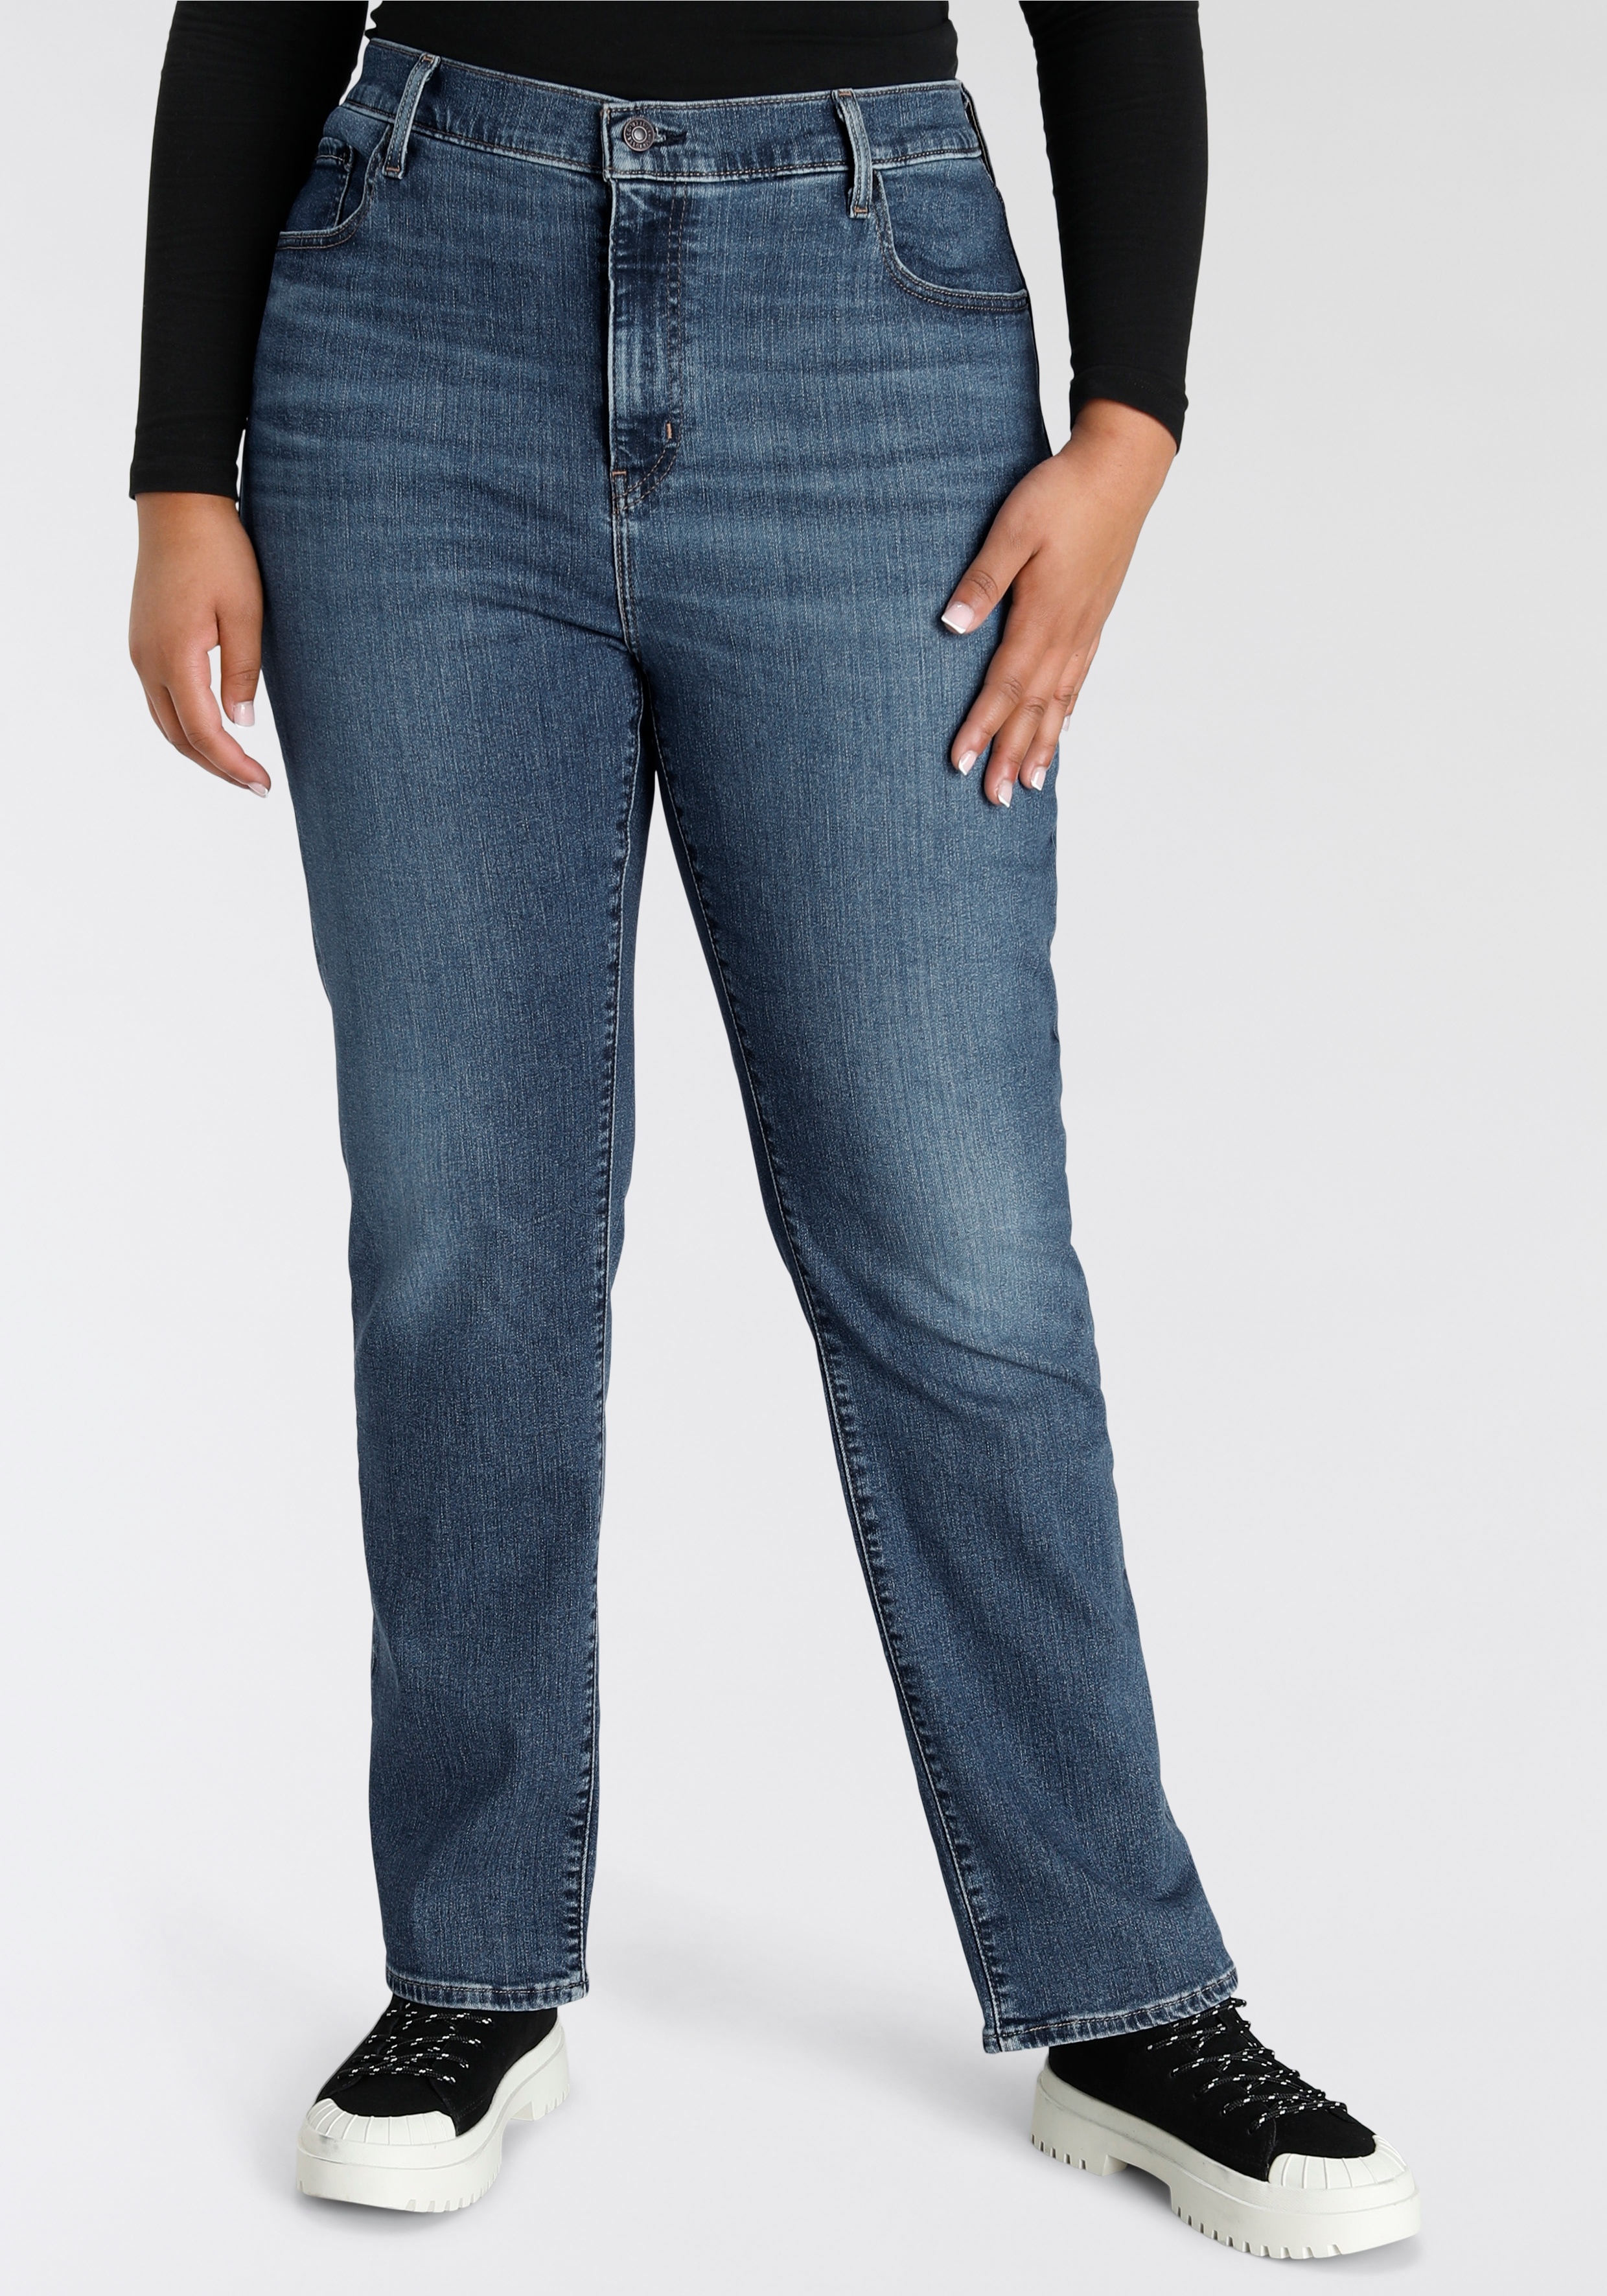 Straight-Jeans LEVI'S PLUS "724 PL HR STRAIGHT" Gr. 16 (46), Länge 34, blau (medium indigo worn in) Damen Jeans Gerade